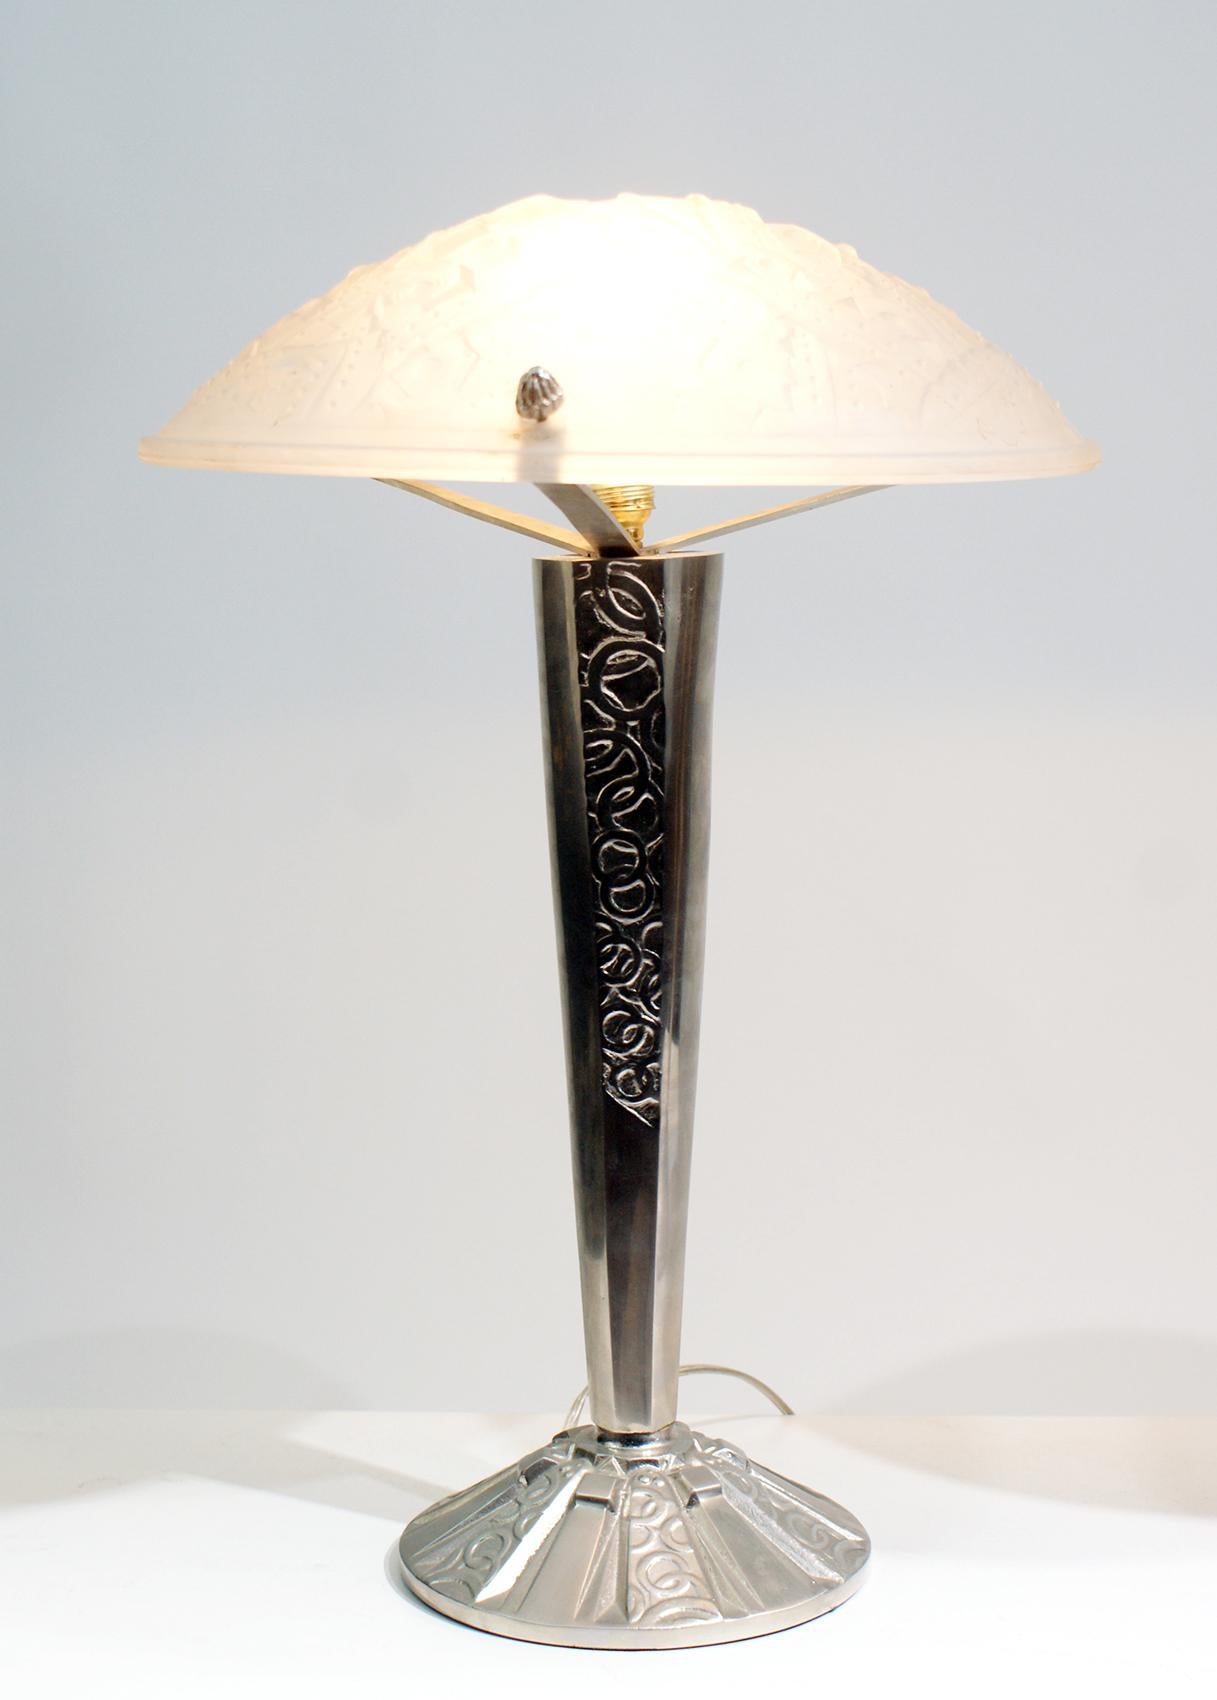 Belle paire de lampes de table Art Déco, panneau en verre moulé de haute qualité avec motif de fruits et feuilles en relief, incluant la signature 